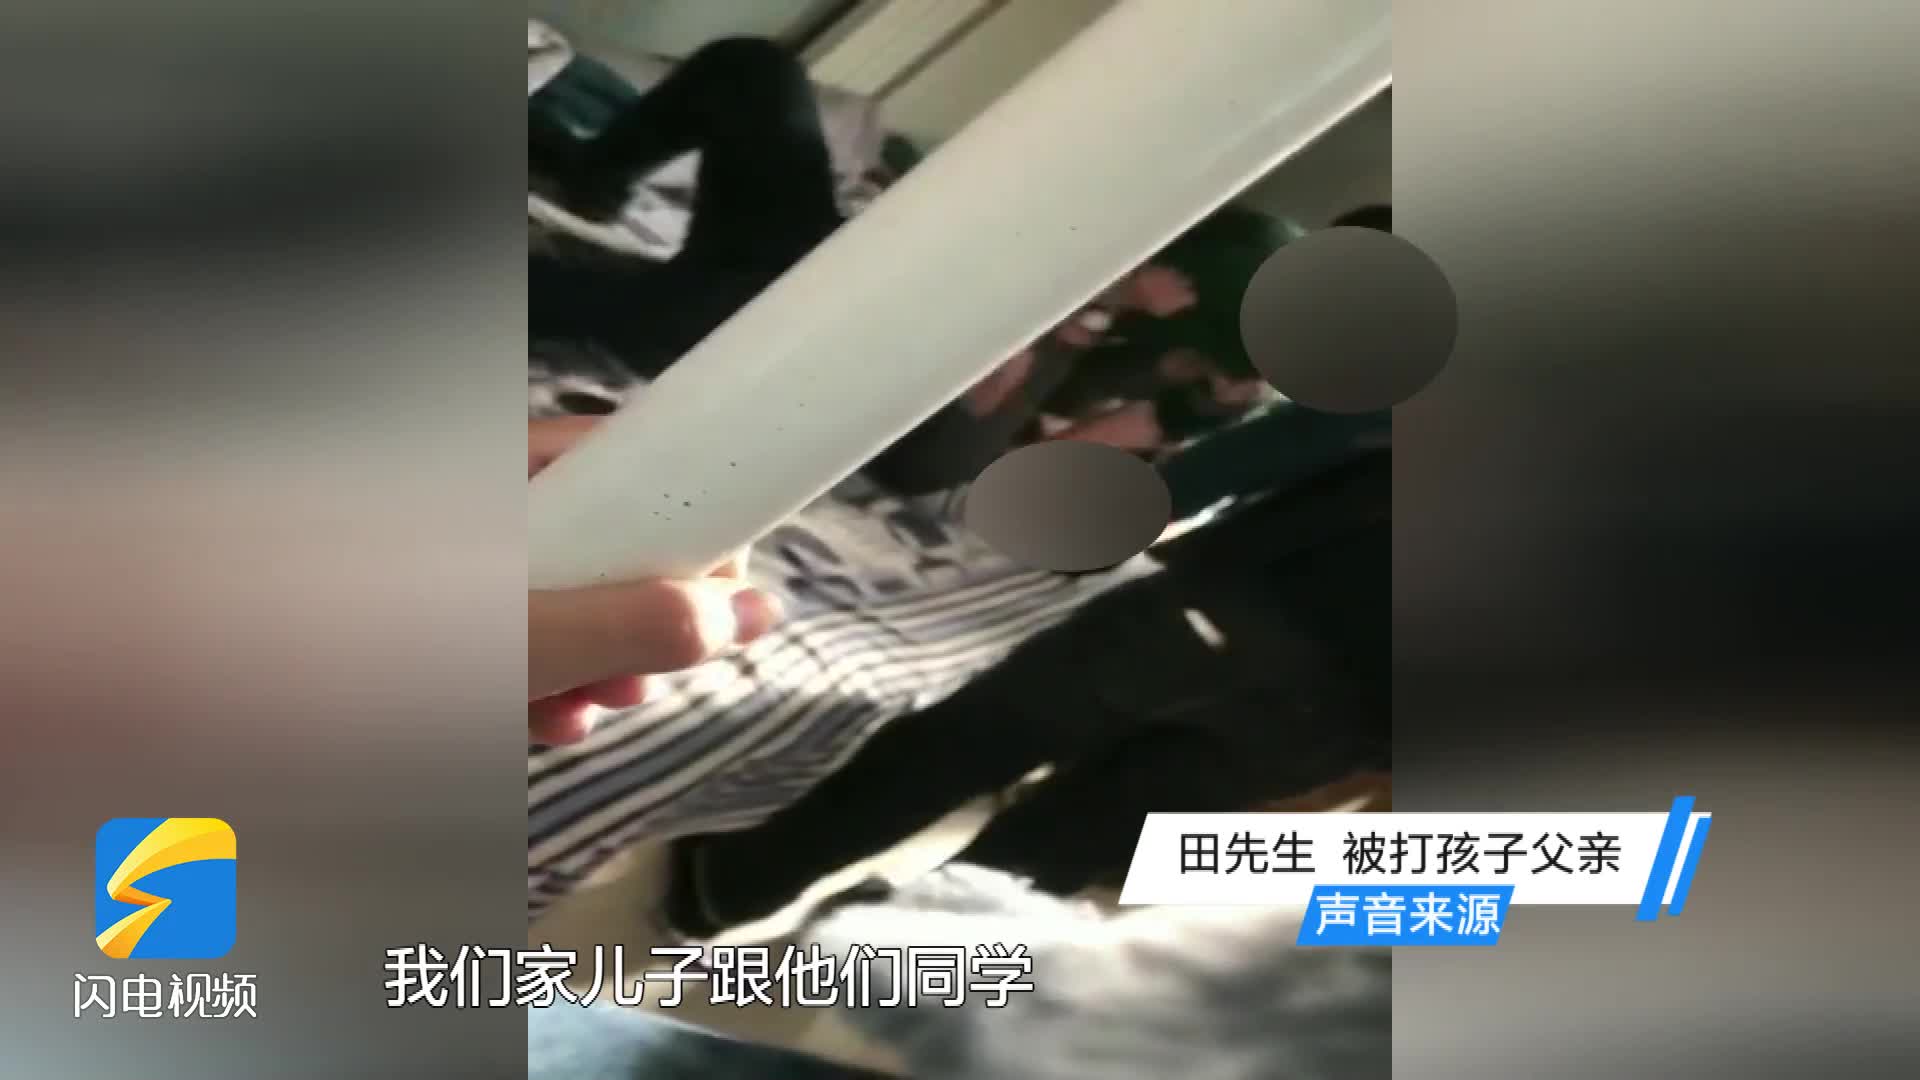 怀安县小饭桌两名管理者殴打11岁男孩被拘留 曾托人私了